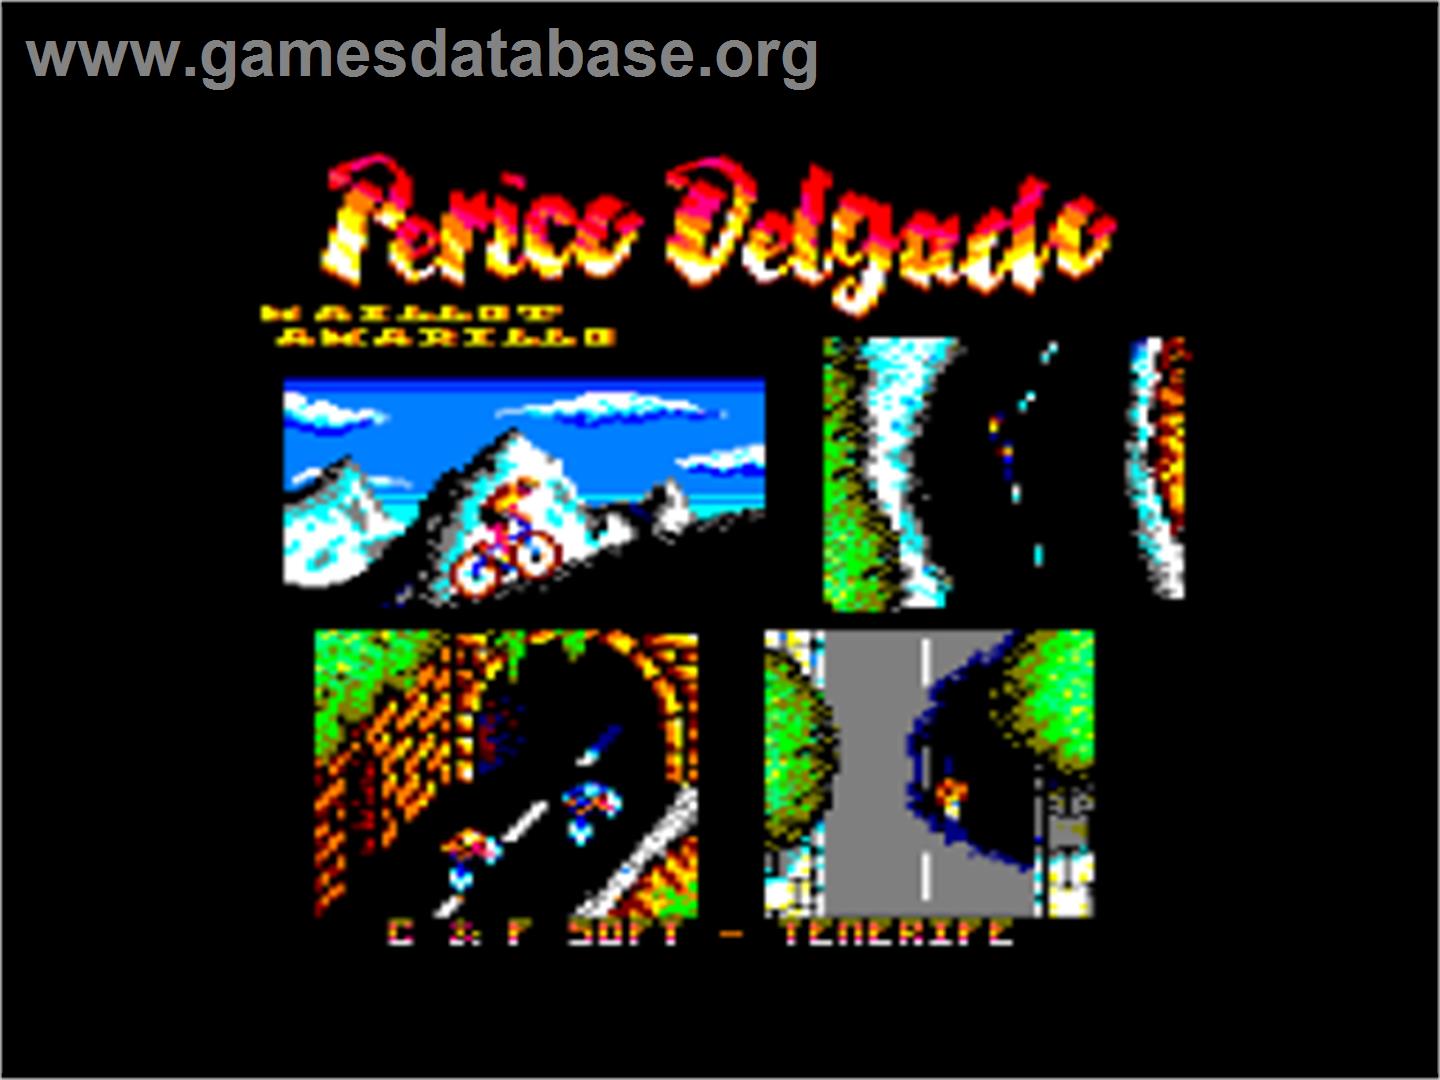 Perico Delgado Maillot Amarillo - Amstrad CPC - Artwork - Title Screen